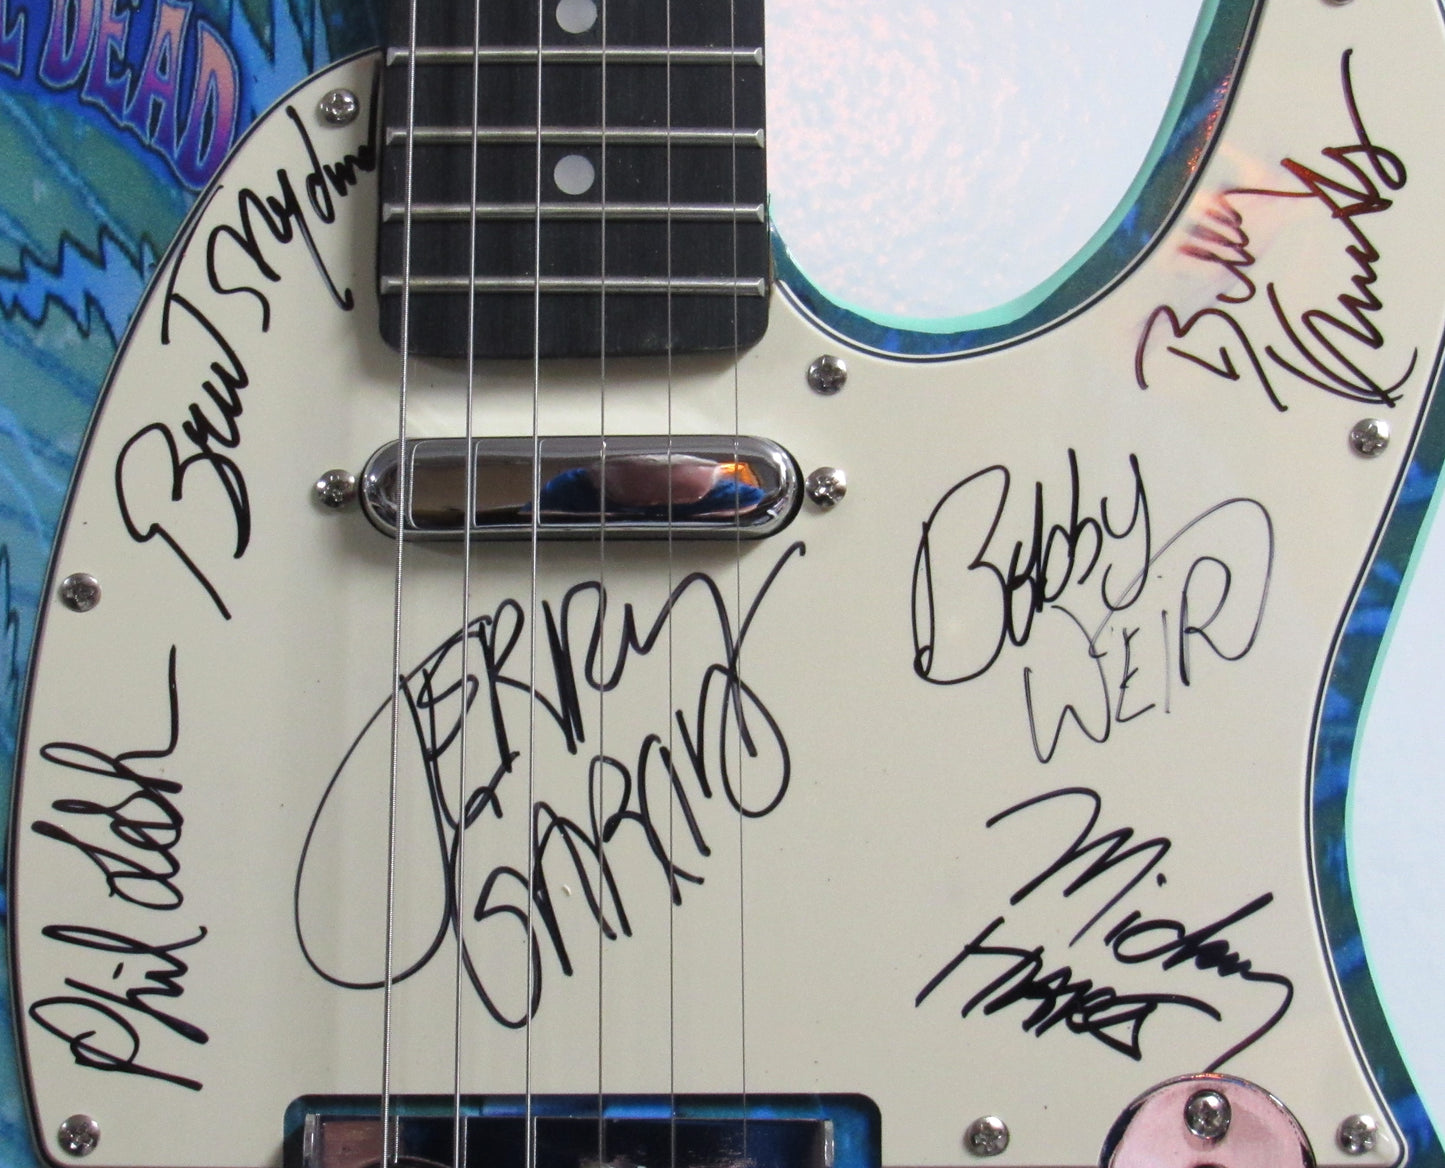 Grateful Dead Autographed Guitar - Zion Graphic Collectibles